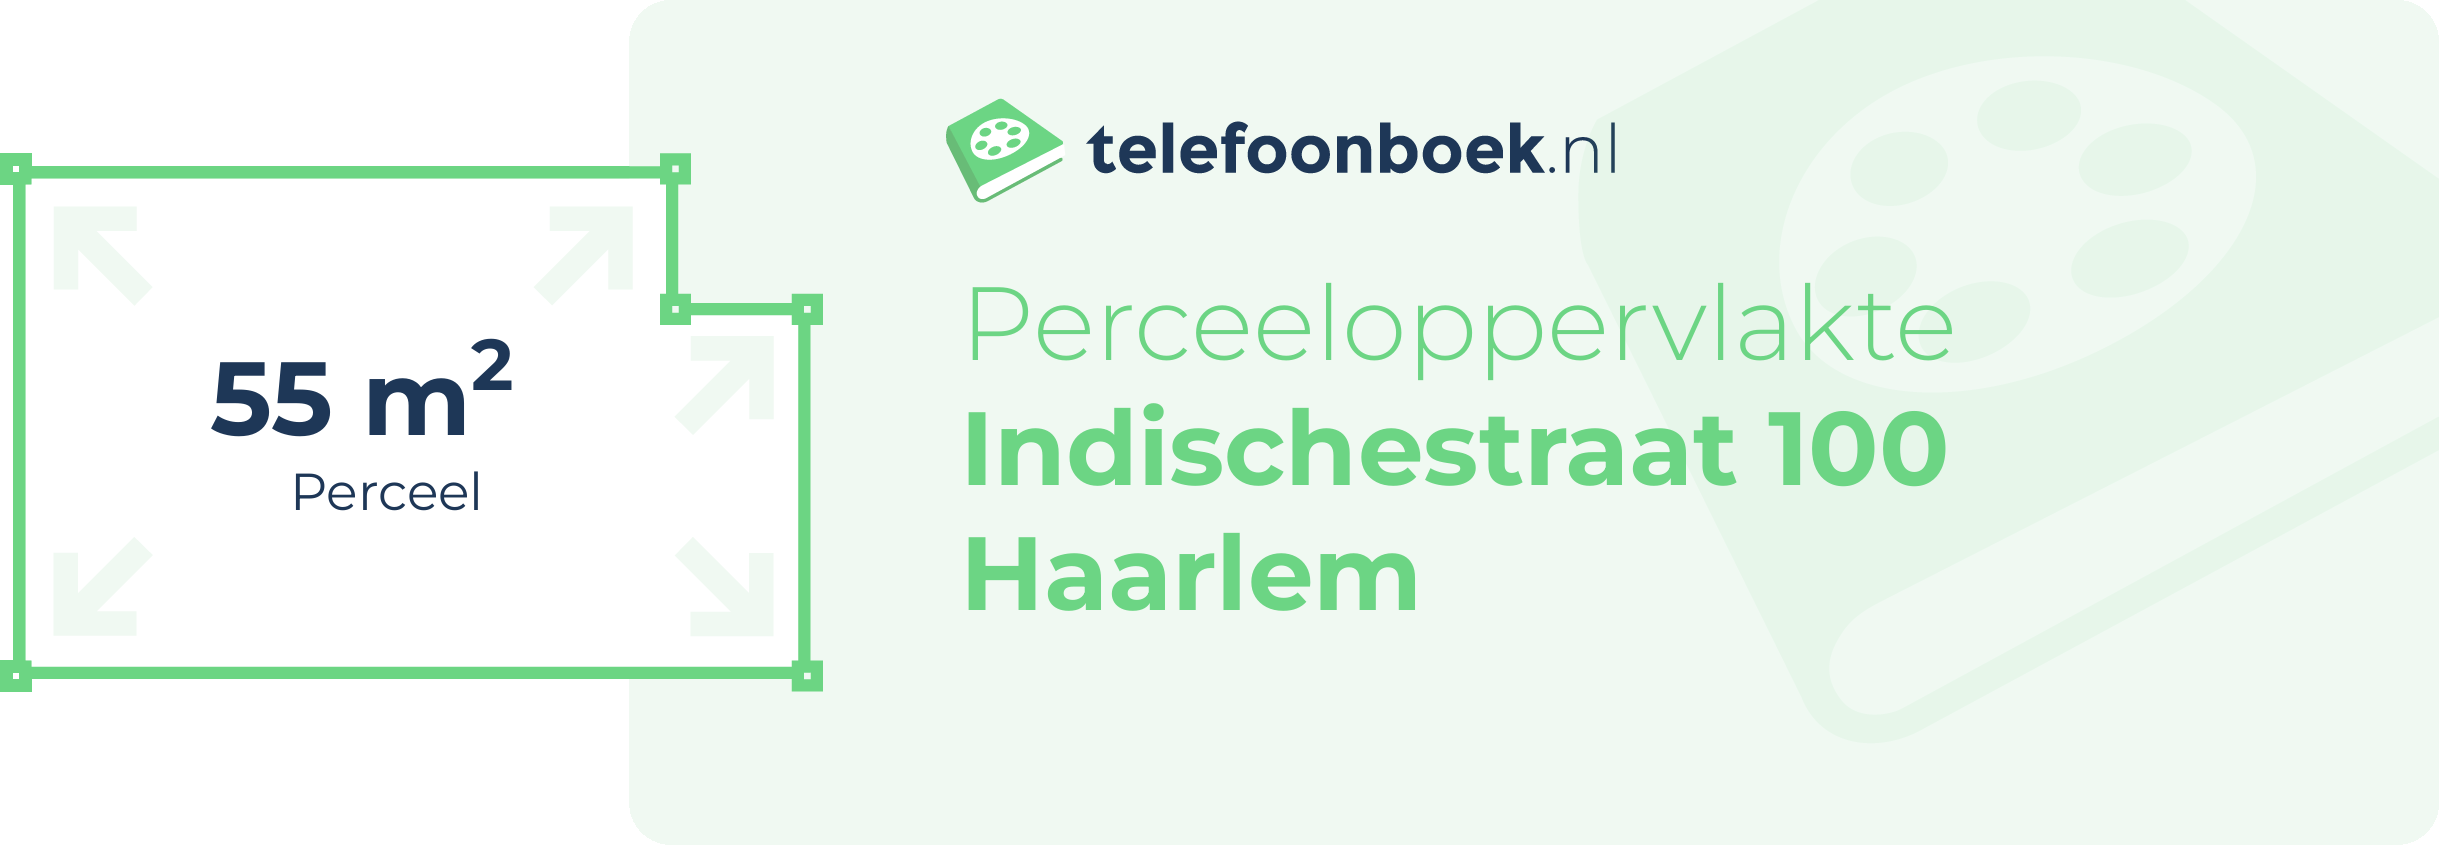 Perceeloppervlakte Indischestraat 100 Haarlem